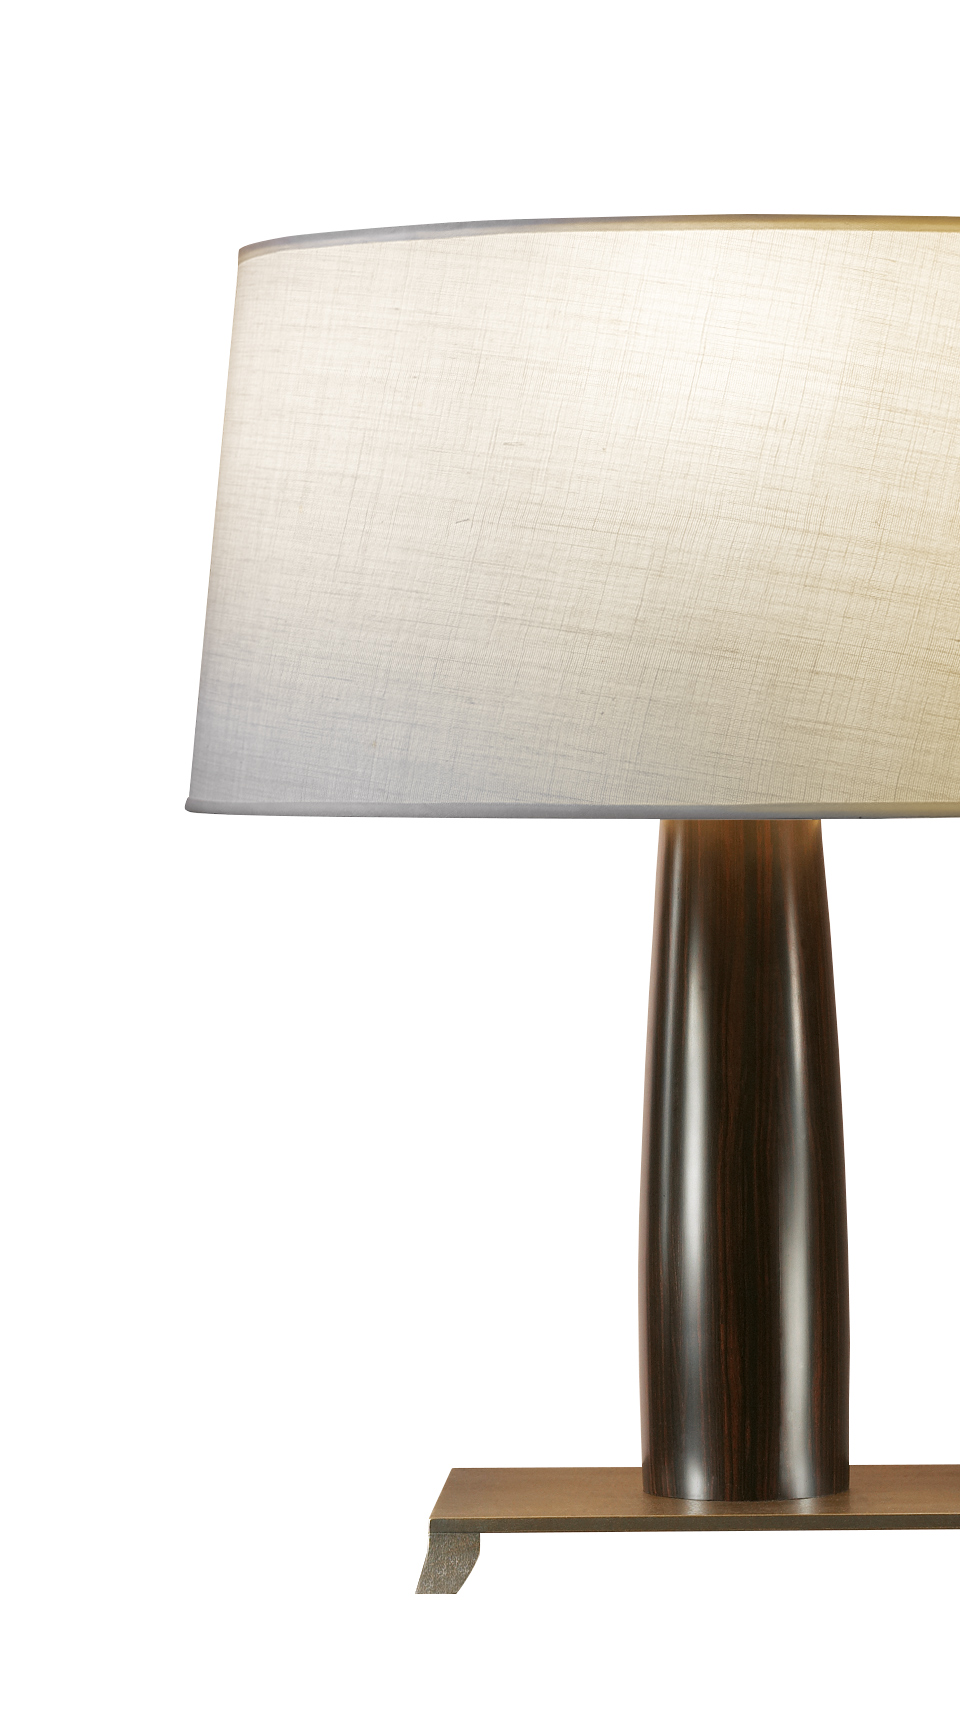 „Pia“ ist eine LED-Tischleuchte mit einer Grundstruktur aus Holz oder mit Lederbezug, einem Sockel aus Bronze und einem Lampenschirm mit handgenähter Borte, aus dem Katalog von Promemoria | Promemoria